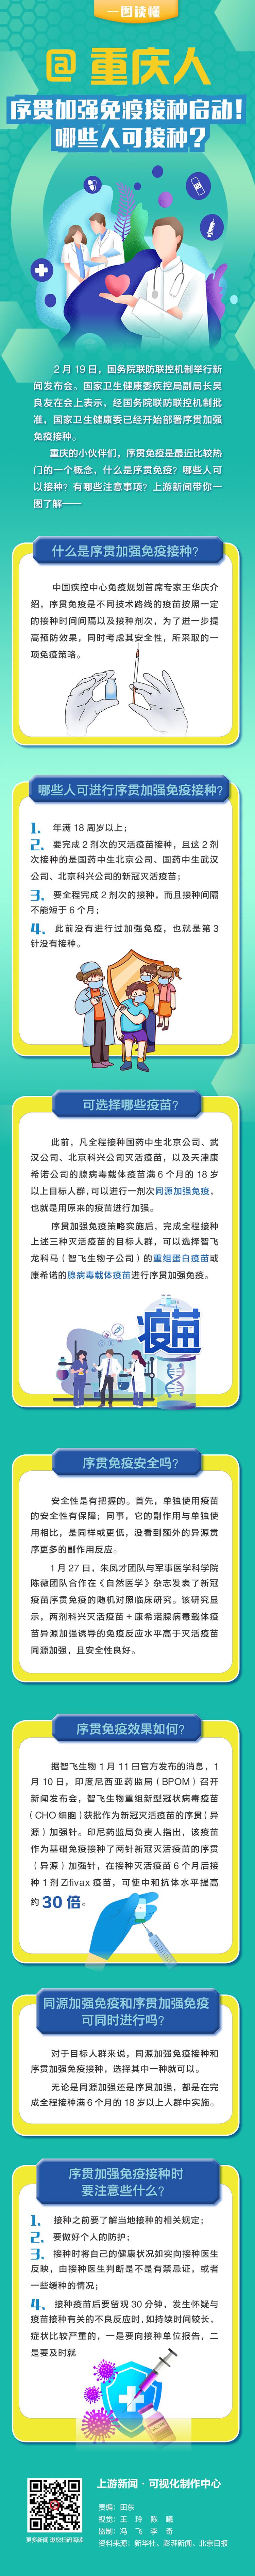 图鉴录 | @重庆人 序贯加强免疫接种启动！哪些人可接种？